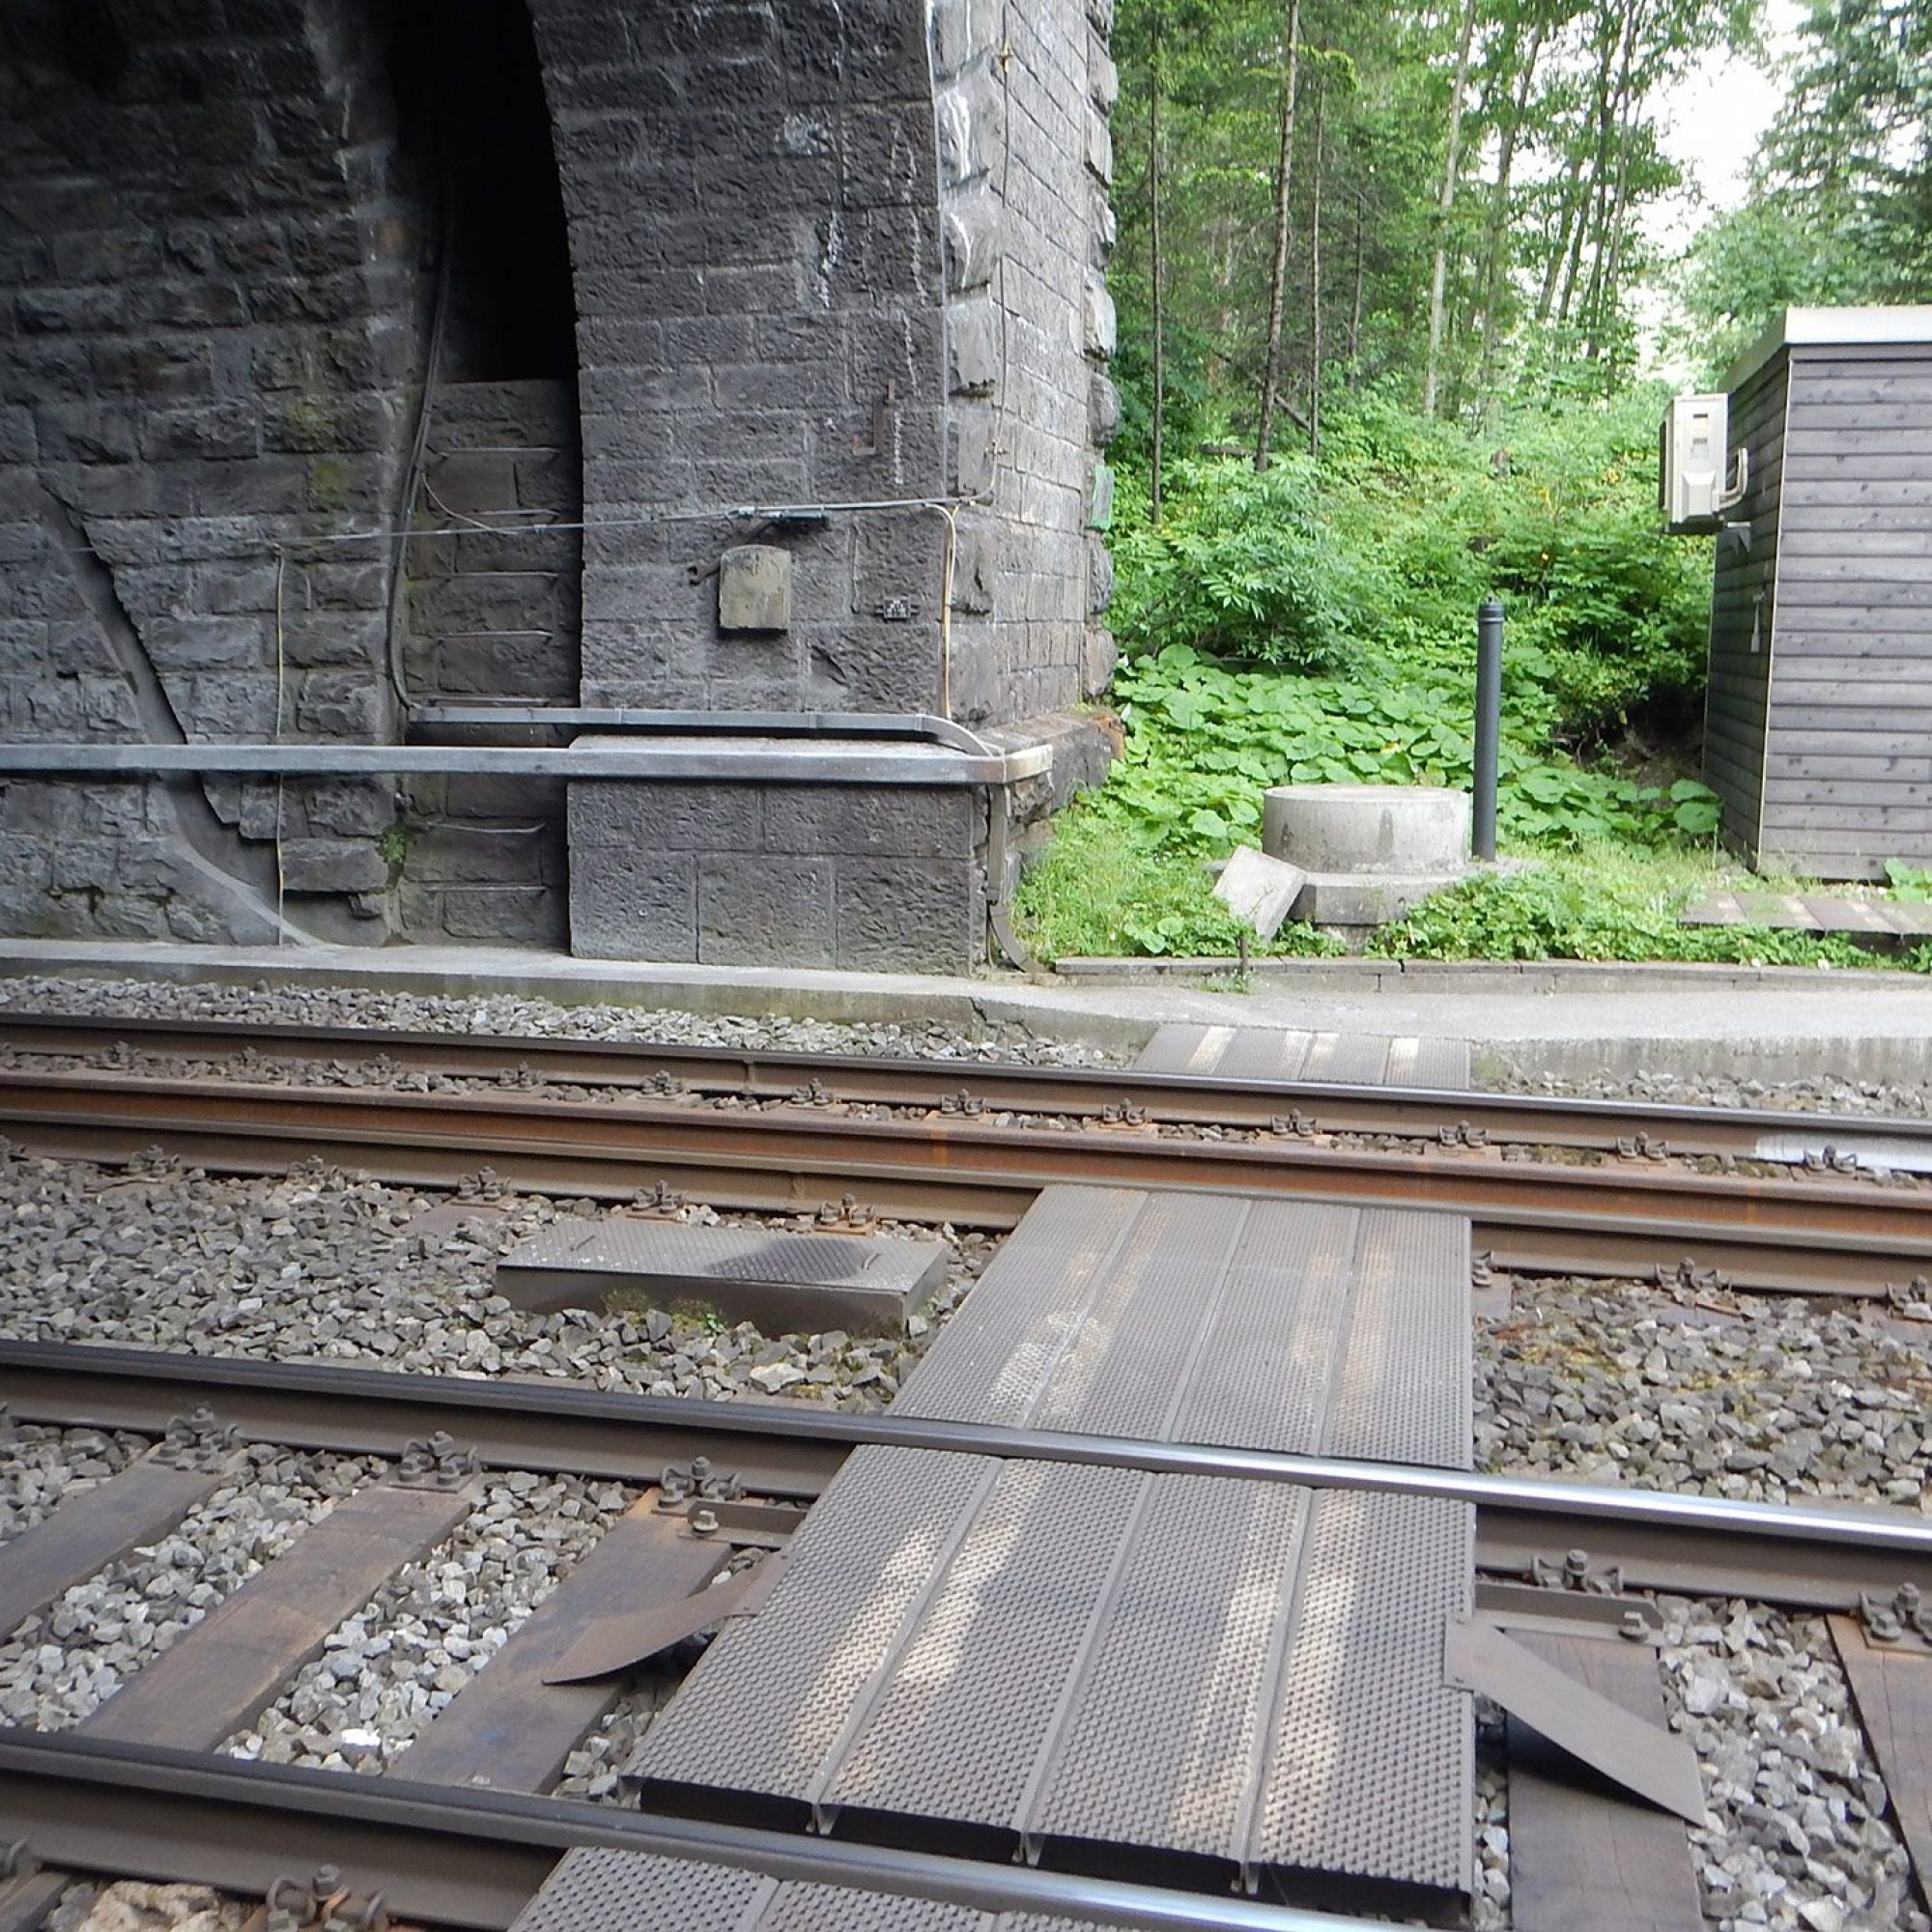 Die BLS ersetzt die Gleise mitsamt Holzschwellen und Schotter durch eine feste Fahrbahn aus Beton.